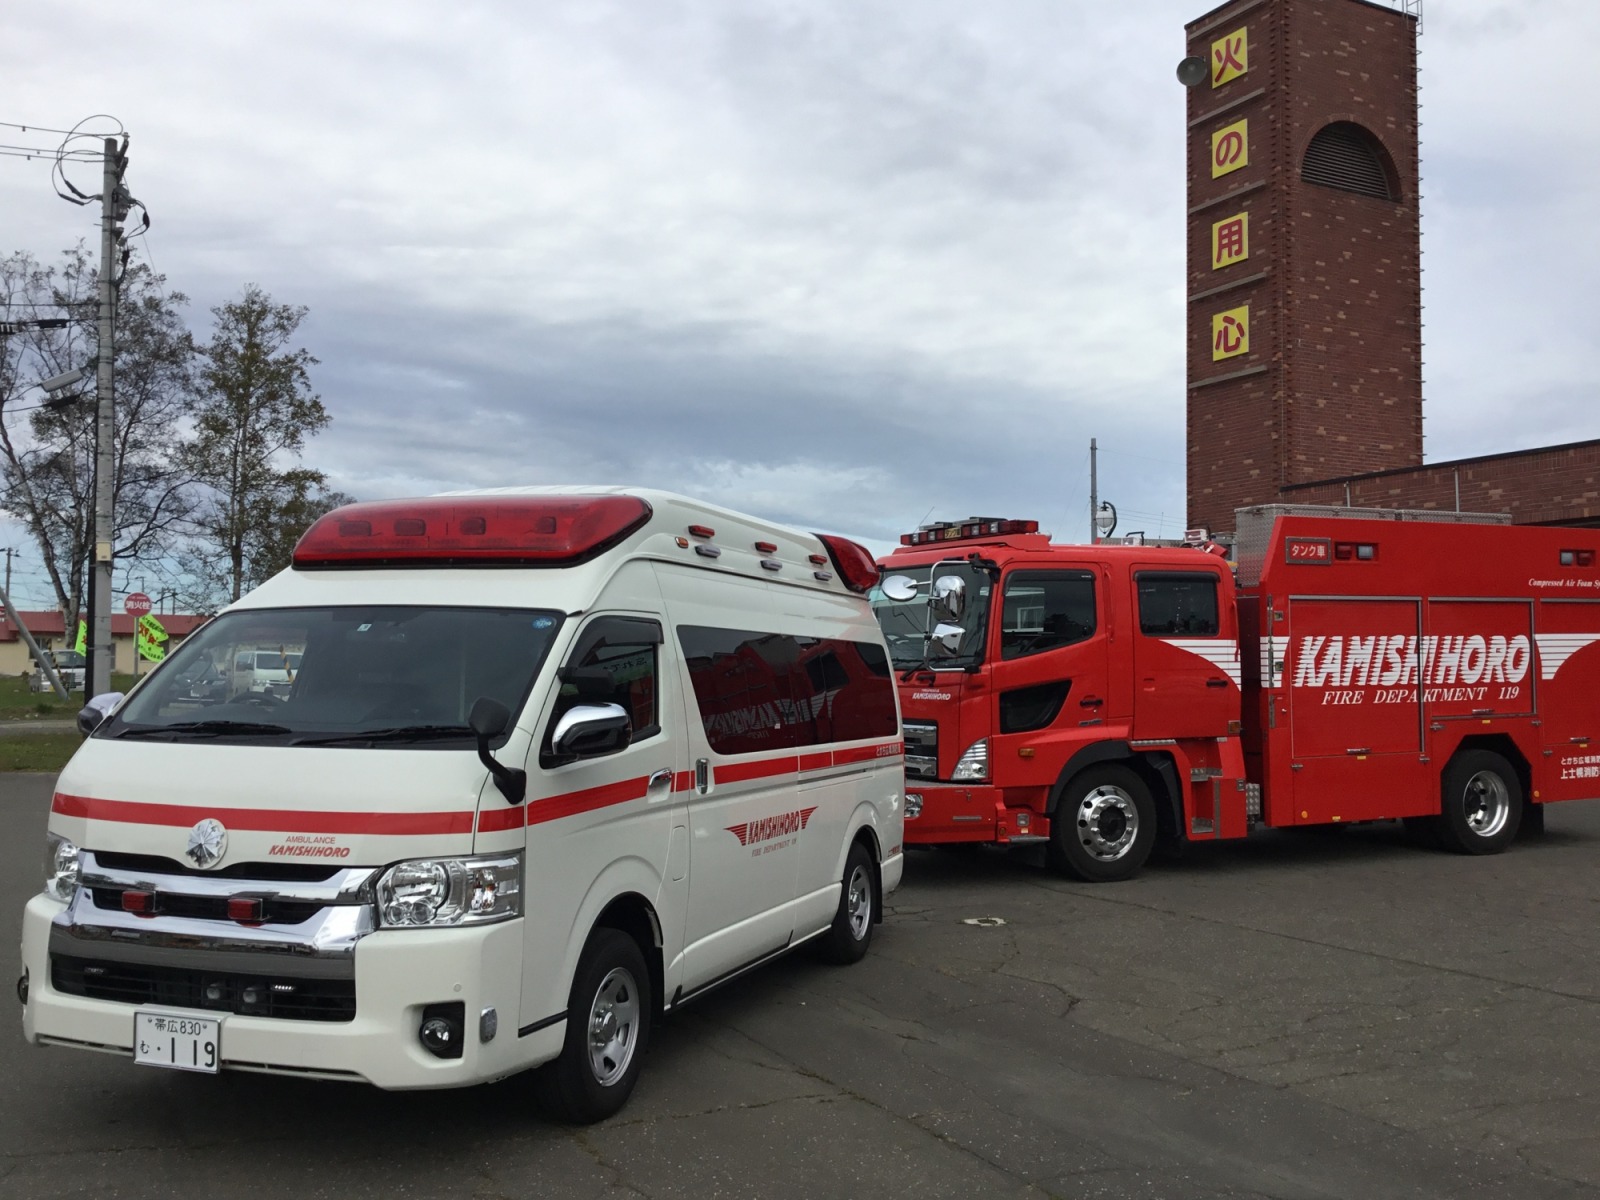 上士幌消防署の高規格救急自動車が更新されましたの画像